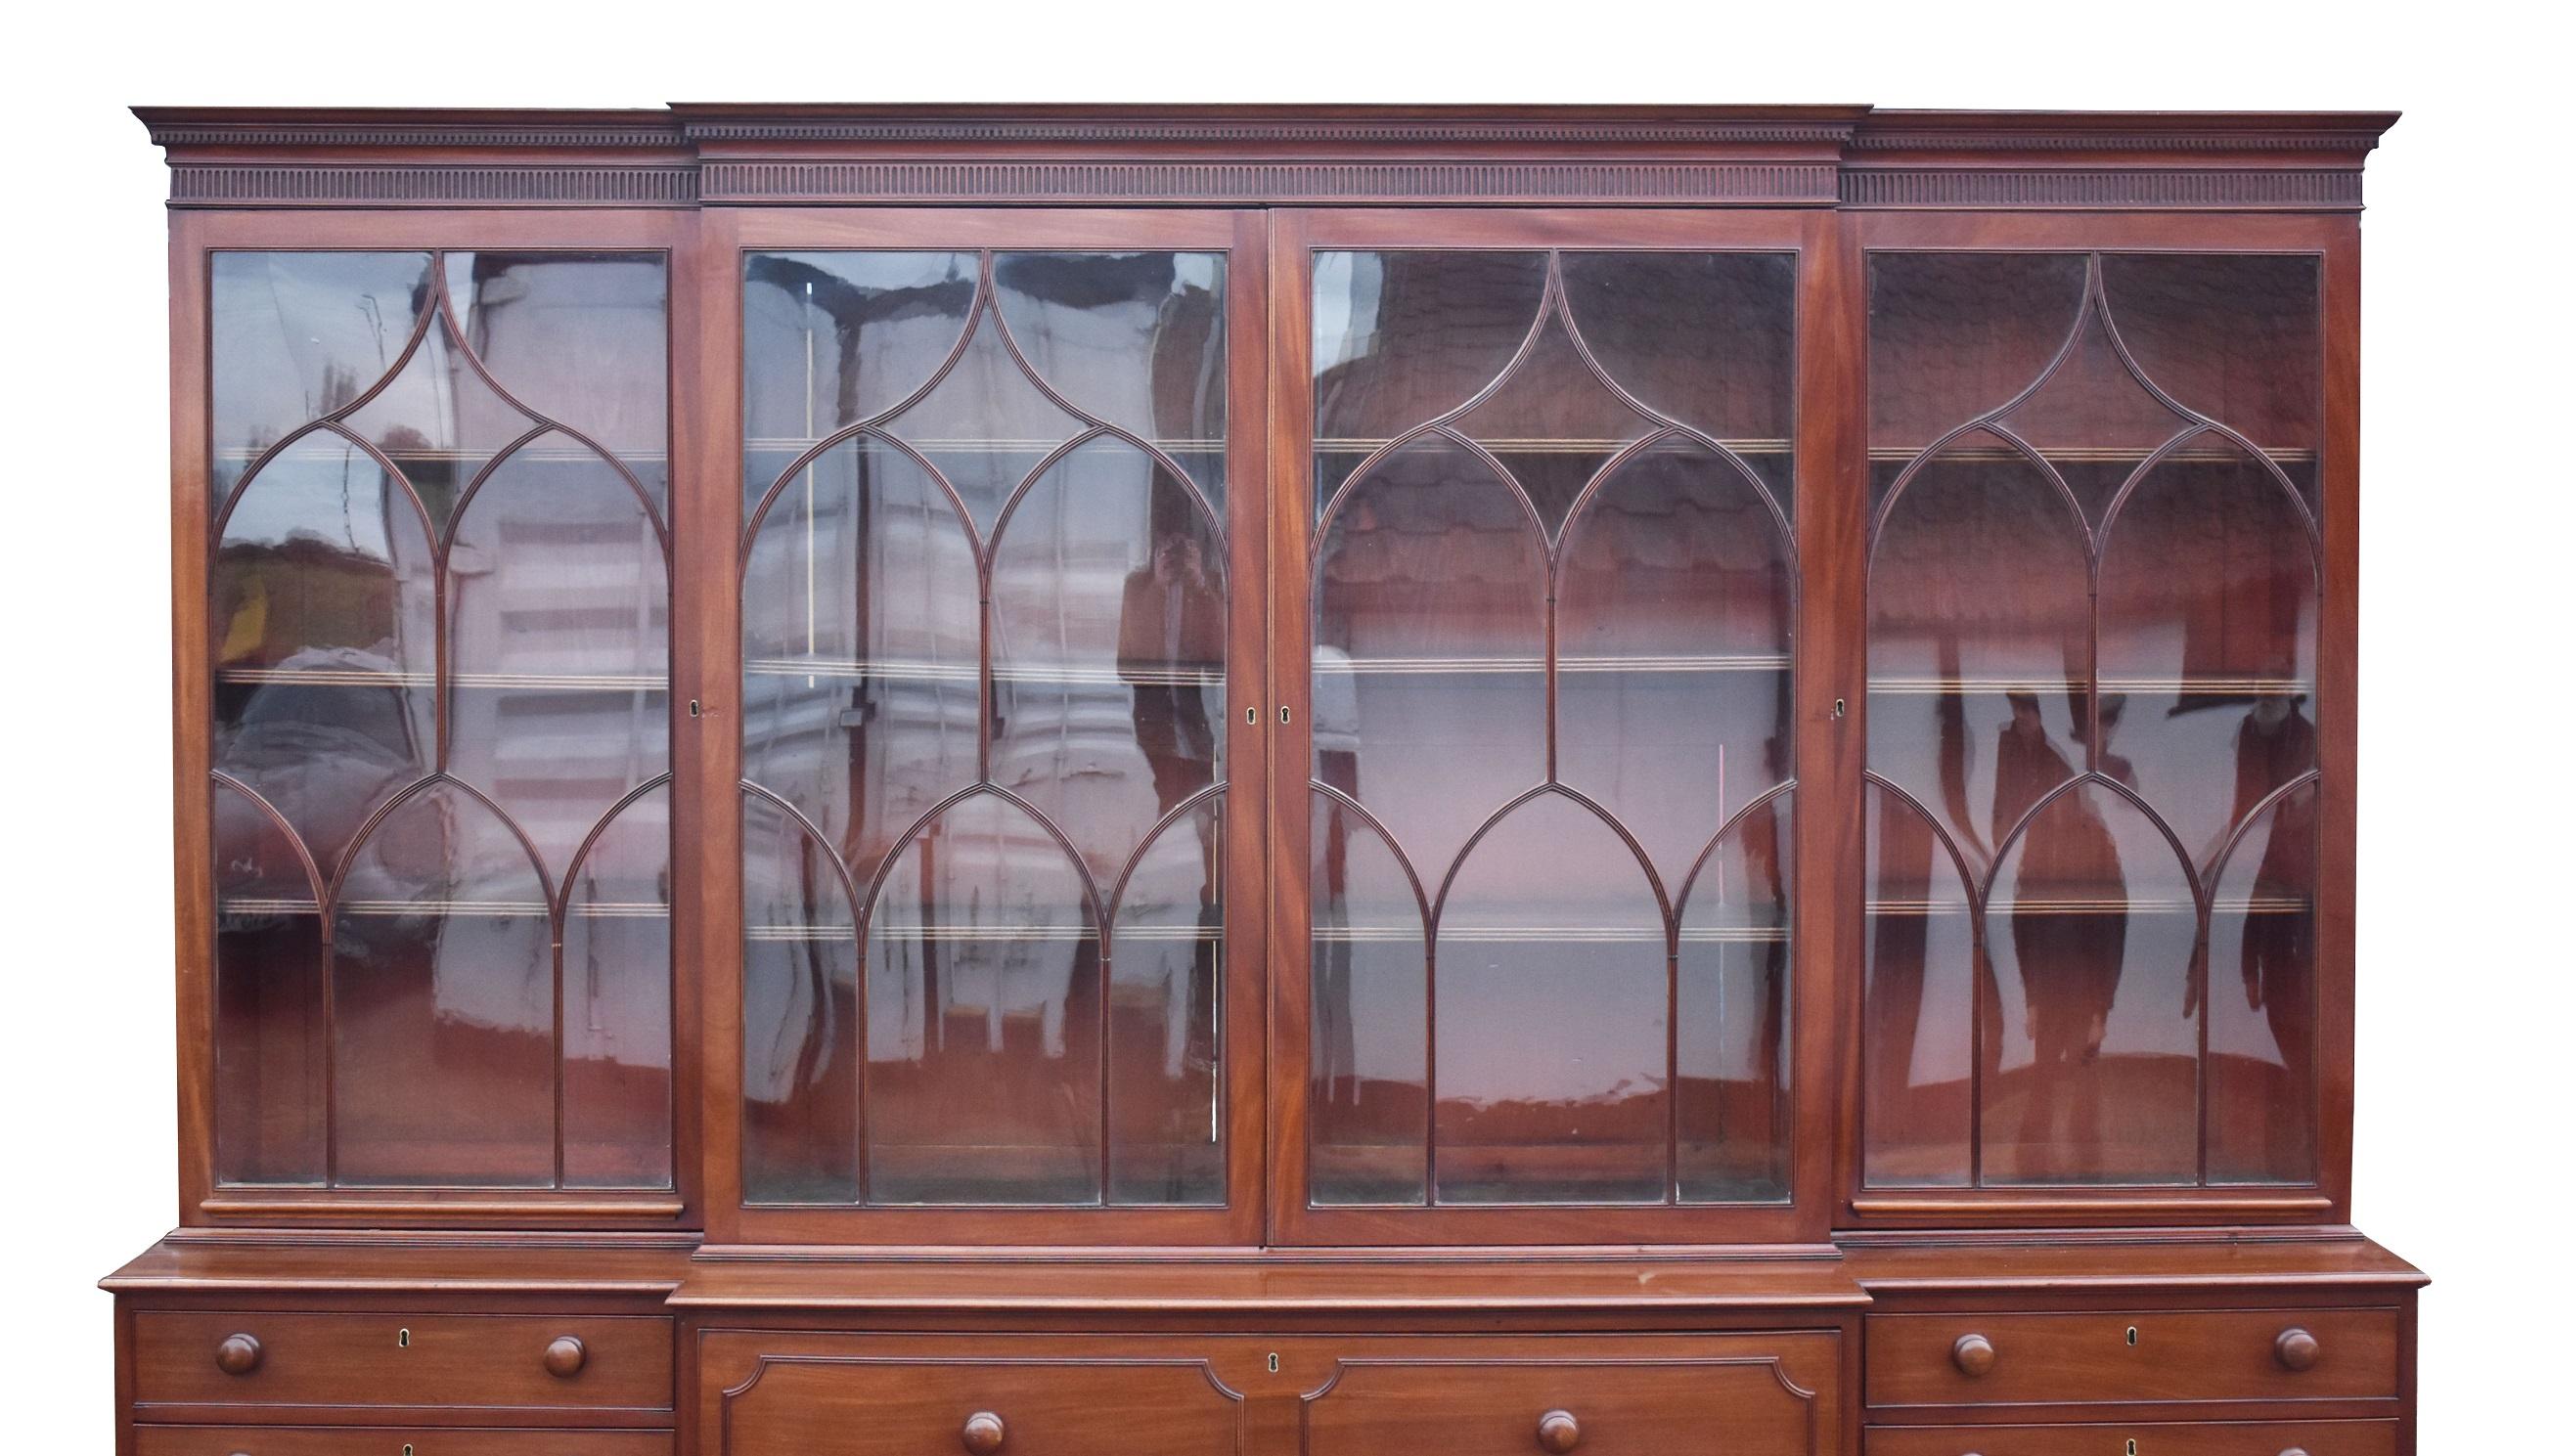 Zum Verkauf steht ein hochwertiges George III. Mahagoni-Sekretär-Bücherregal. Die vier Türen mit gewölbten ovalen Sprossen öffnen sich zu verstellbaren Innenböden. Darunter befindet sich in der Mitte eine große Sekretariatsschublade, deren Front